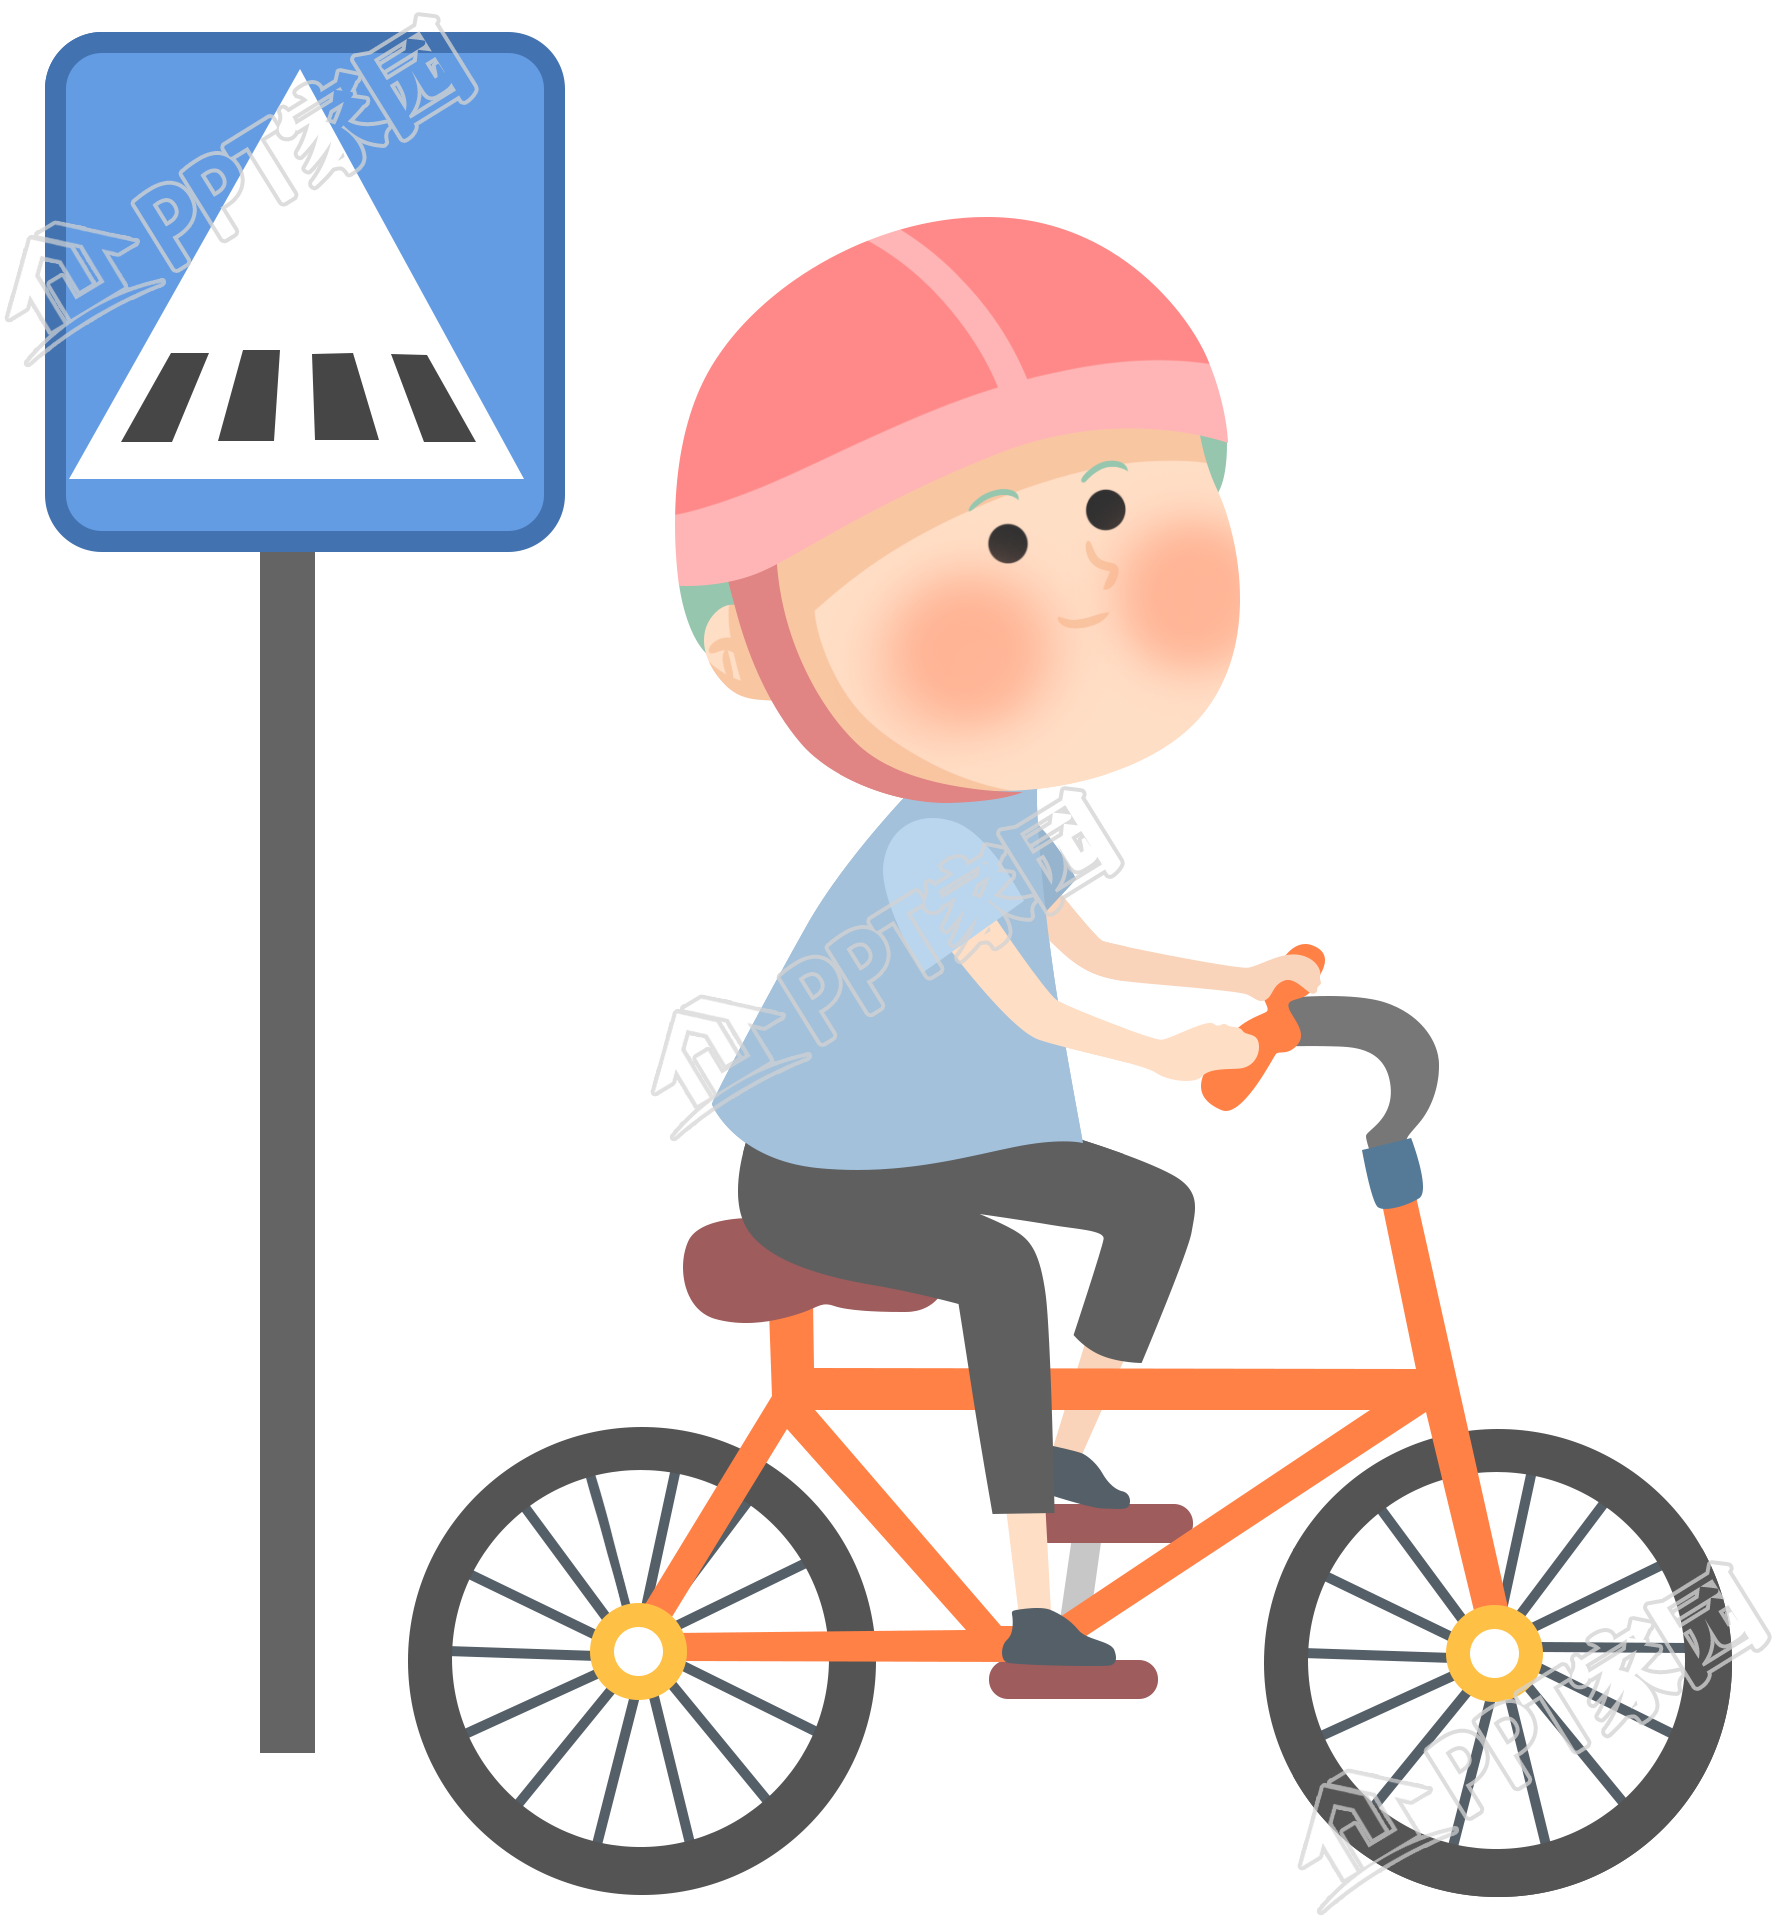 交通安全警示骑车过马路的小孩人物免抠图片下载推荐